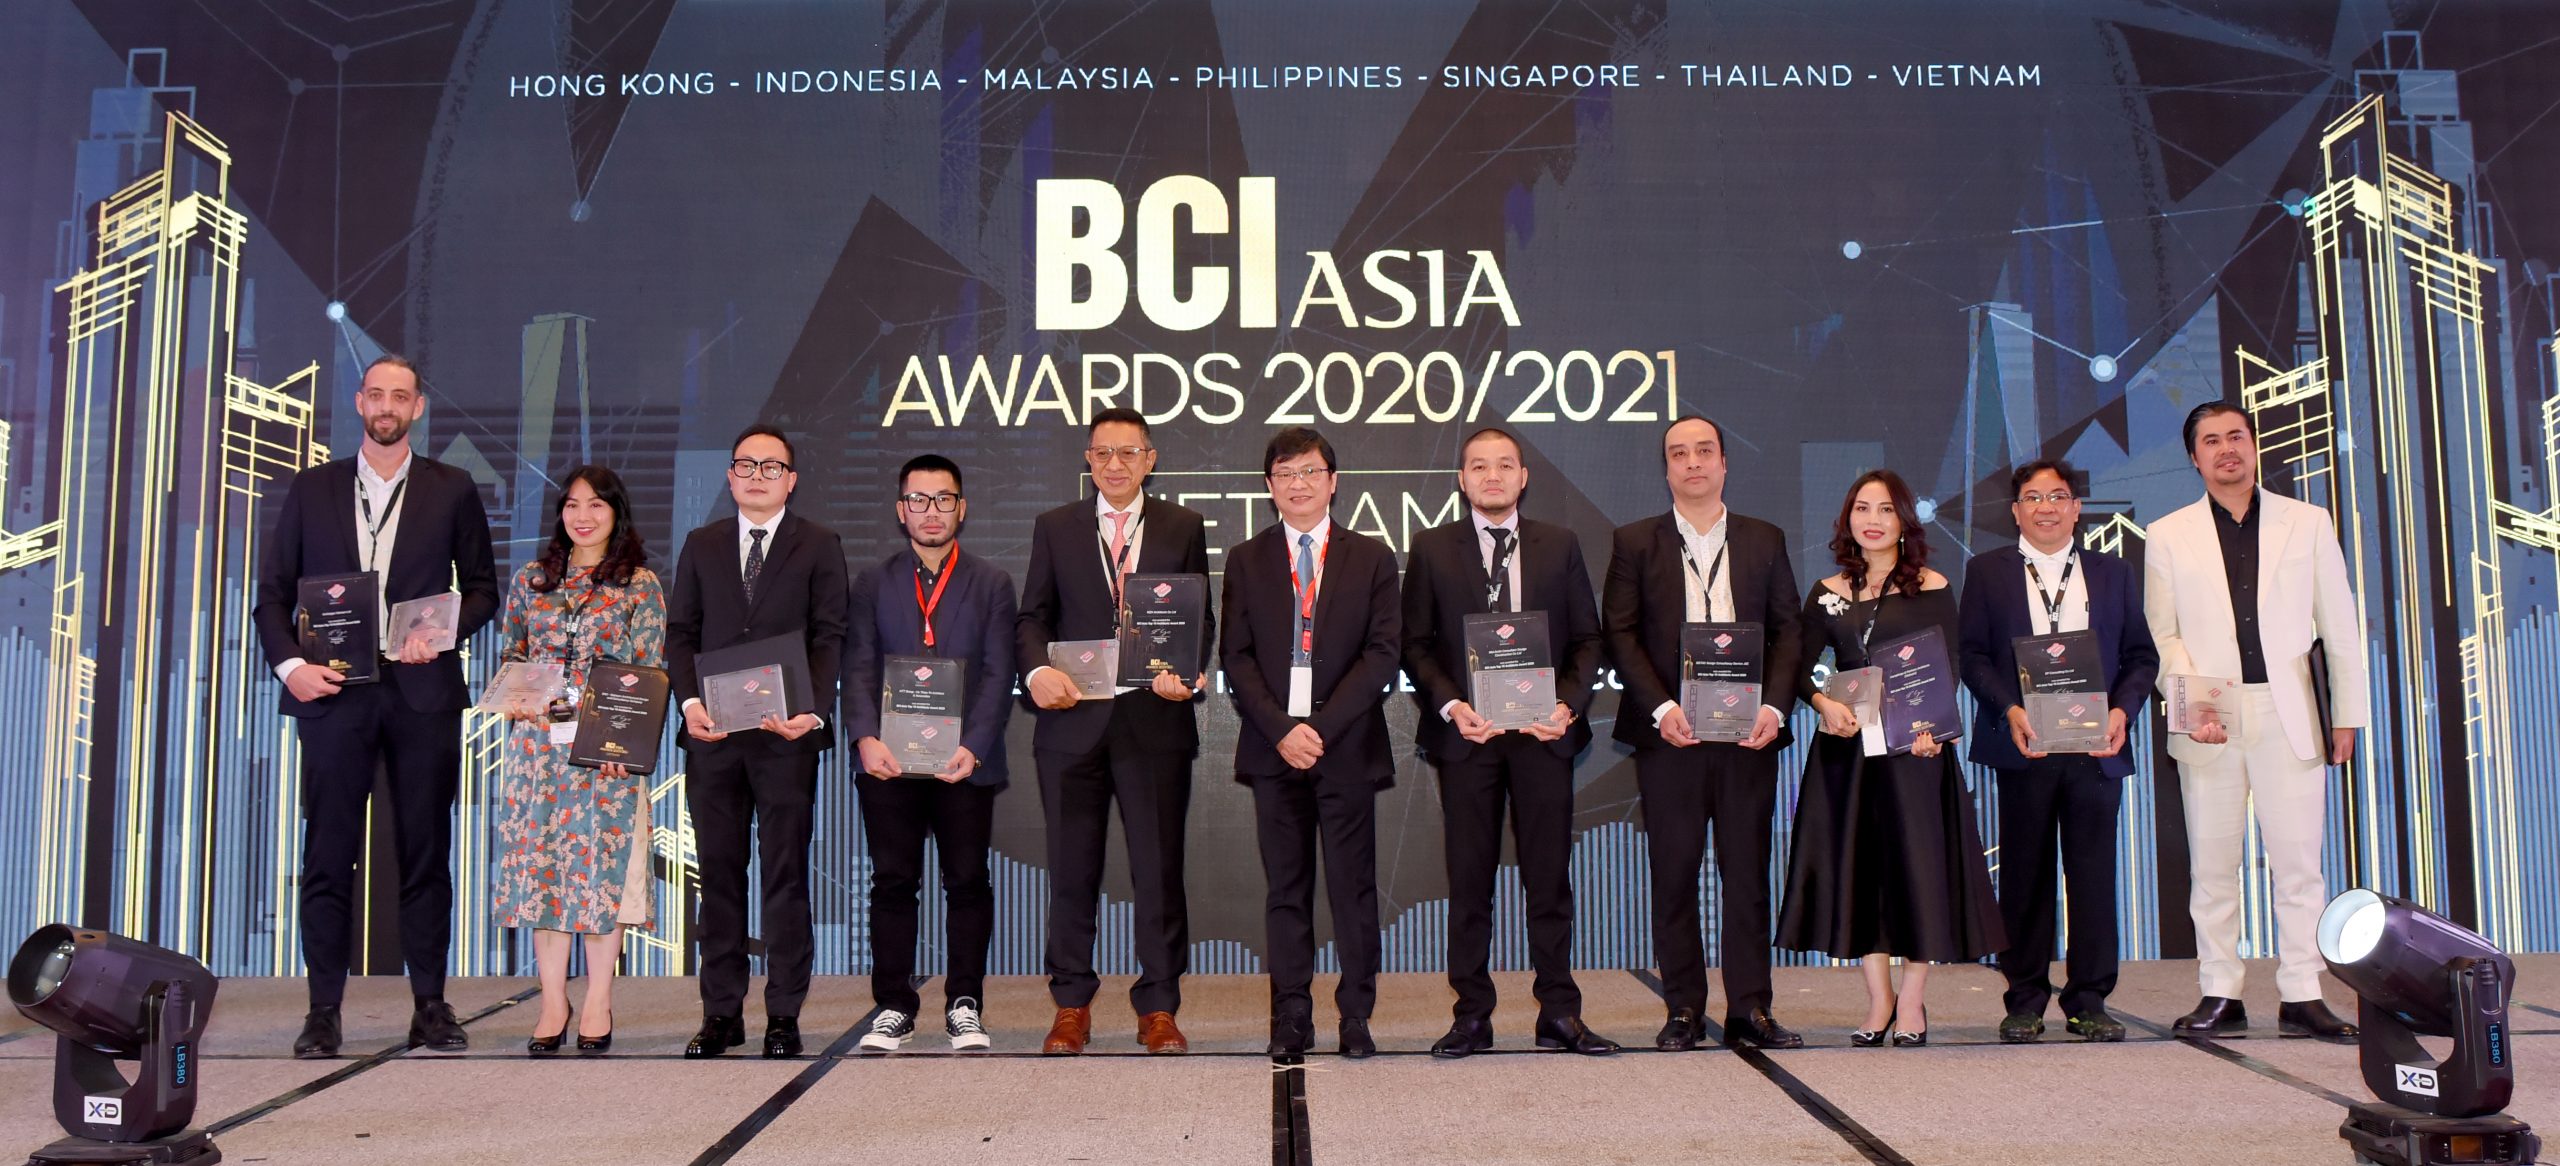 BCI Asia Award là giải thưởng thường niên, quy tụ sự tham gia của các đơn vị hàng đầu trong ngành kiến trúc và xây dựng